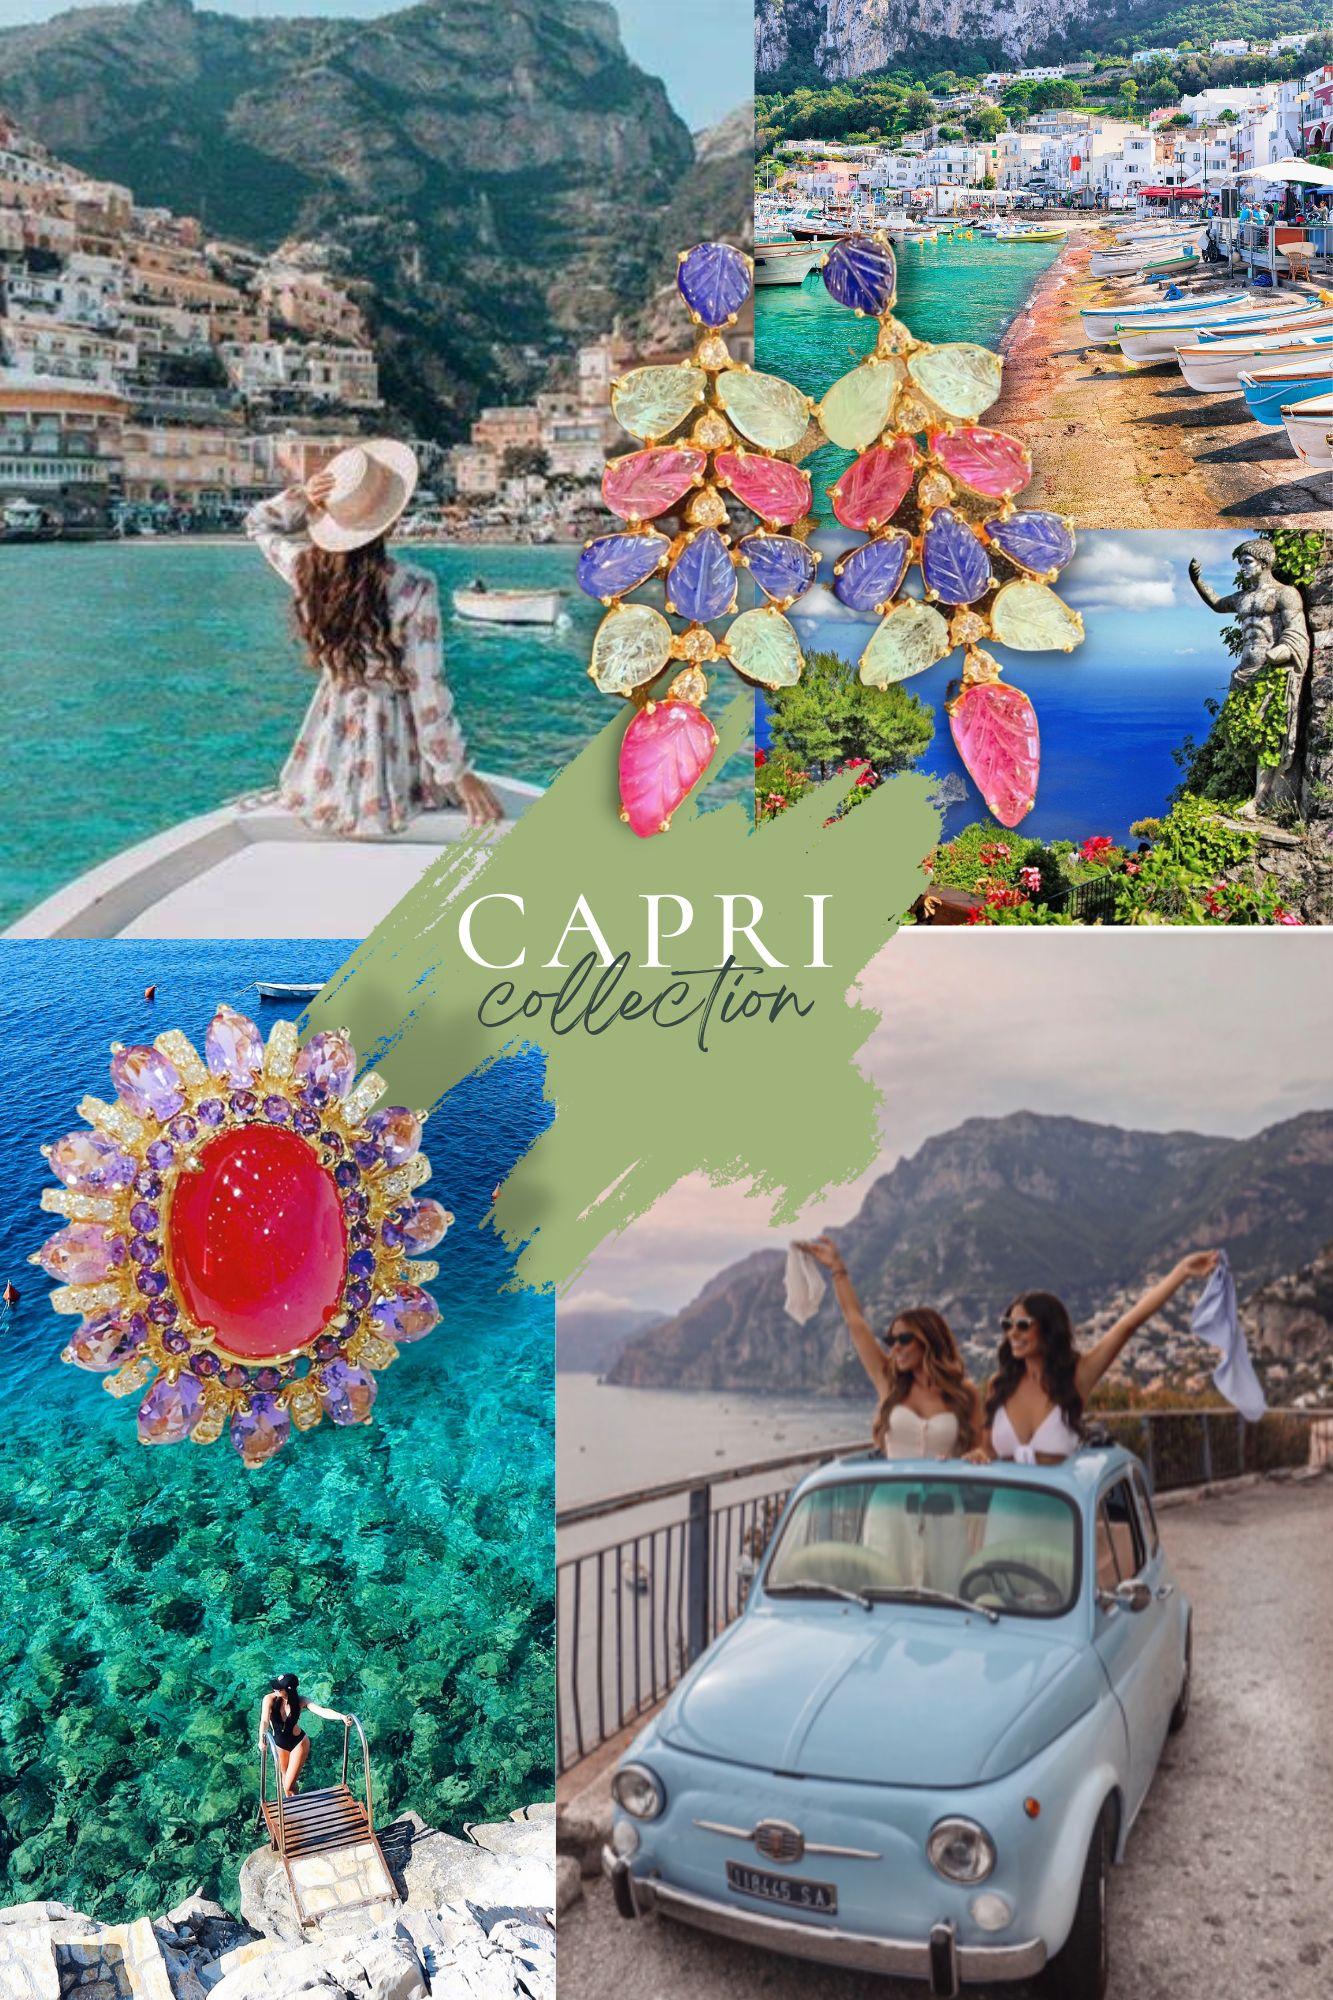 Bochic “Capri” London Topaz & White Zircon Bangle Set in 22k Gold & Silver 10